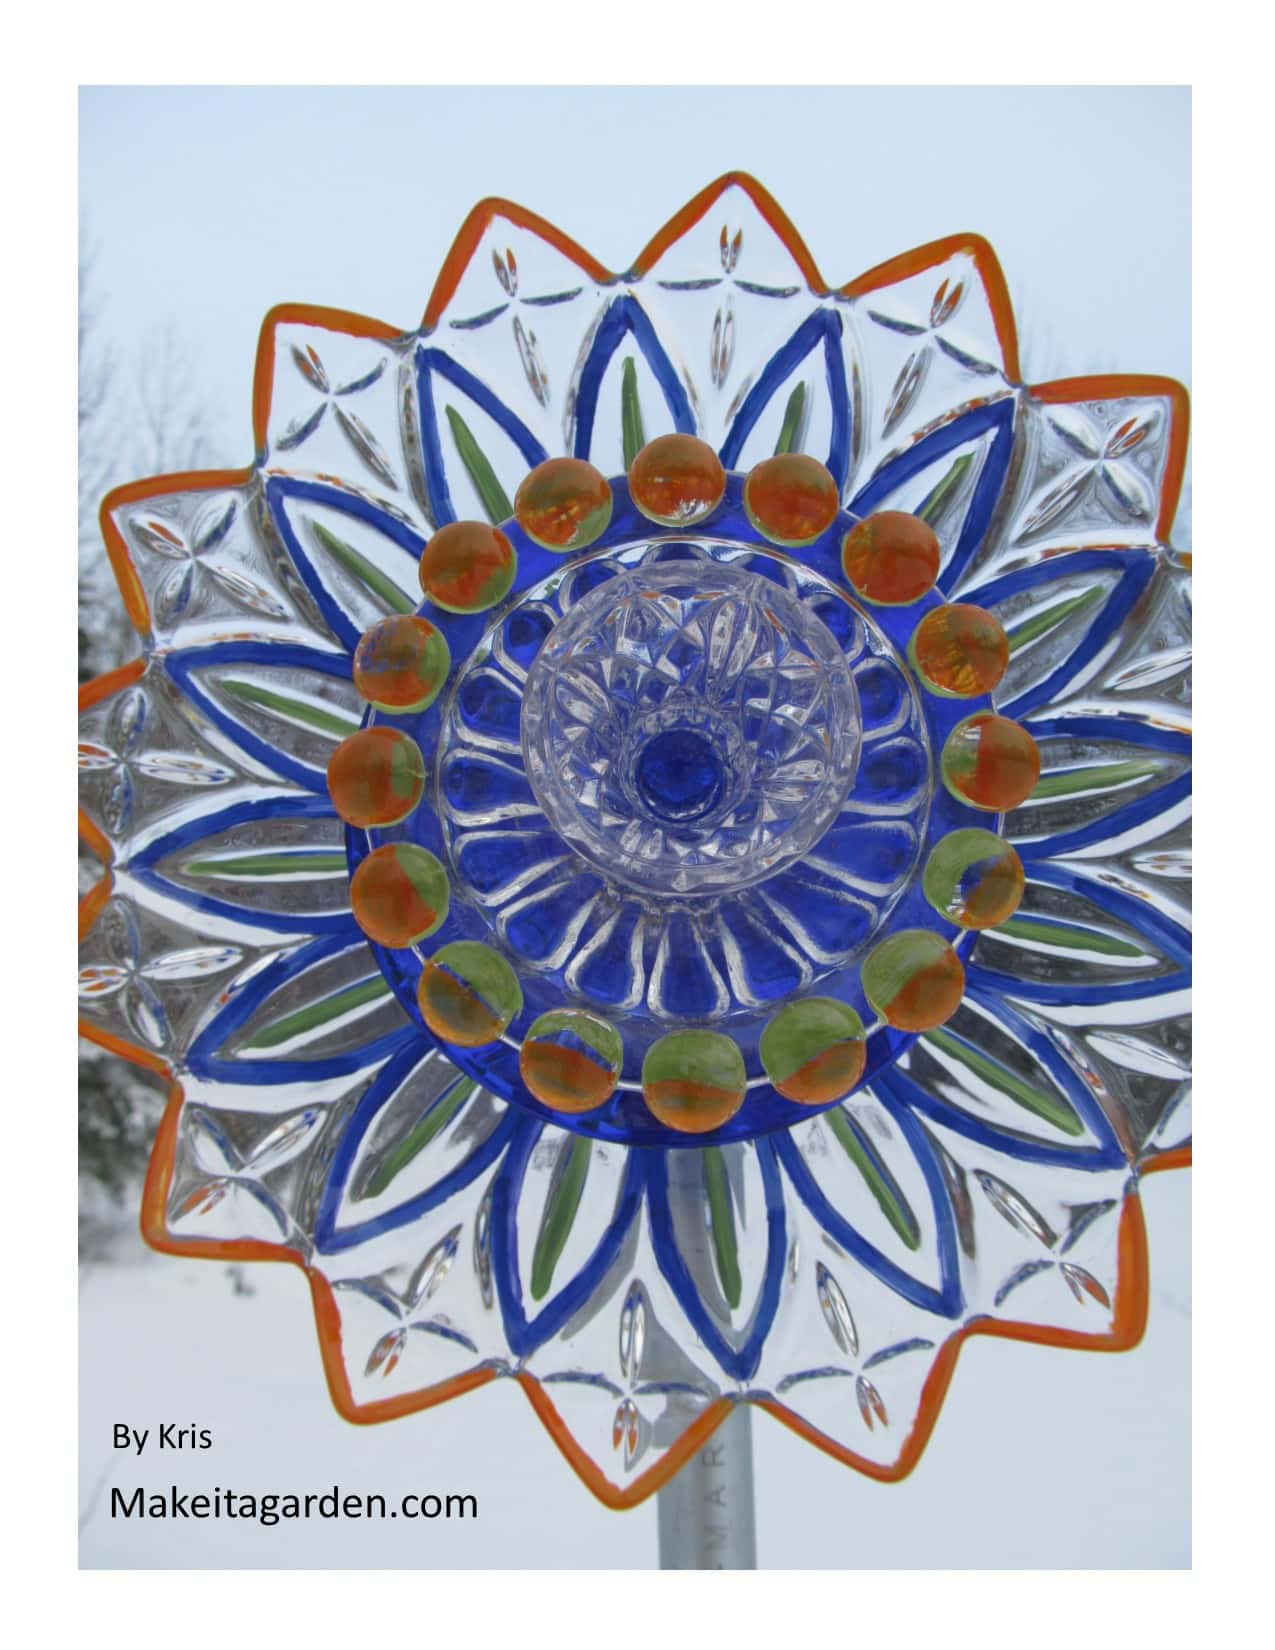 Flor de plato de artista. Un bonito cuenco de vidrio con forma de flor que se usa para pintar en placas de vidrio